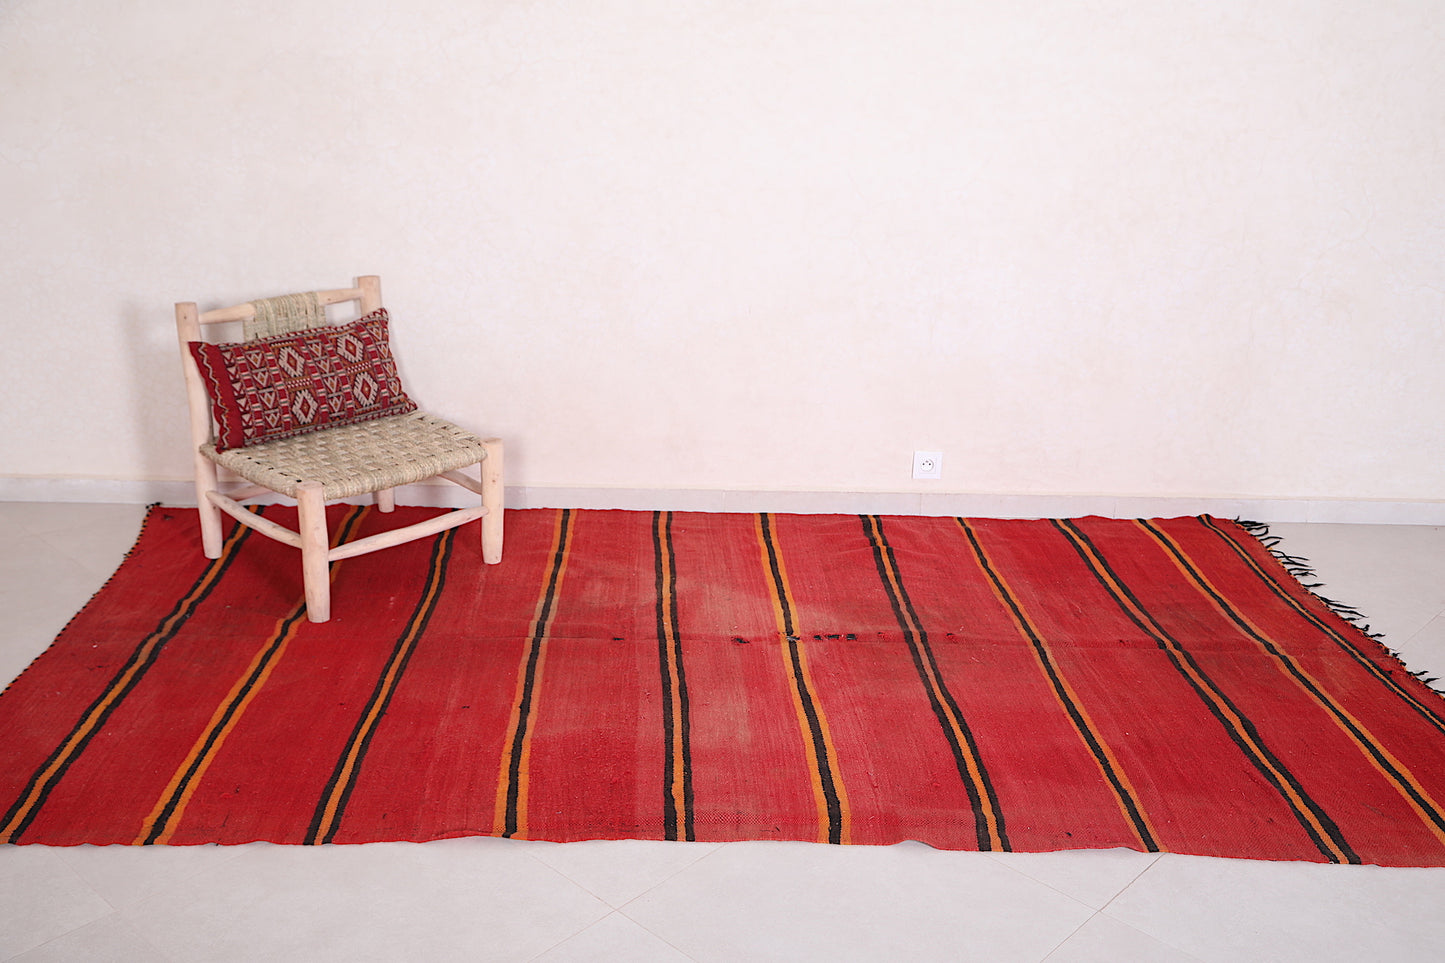 Vintage red Moroccan blanket - 5.8 FT X 10.6 FT